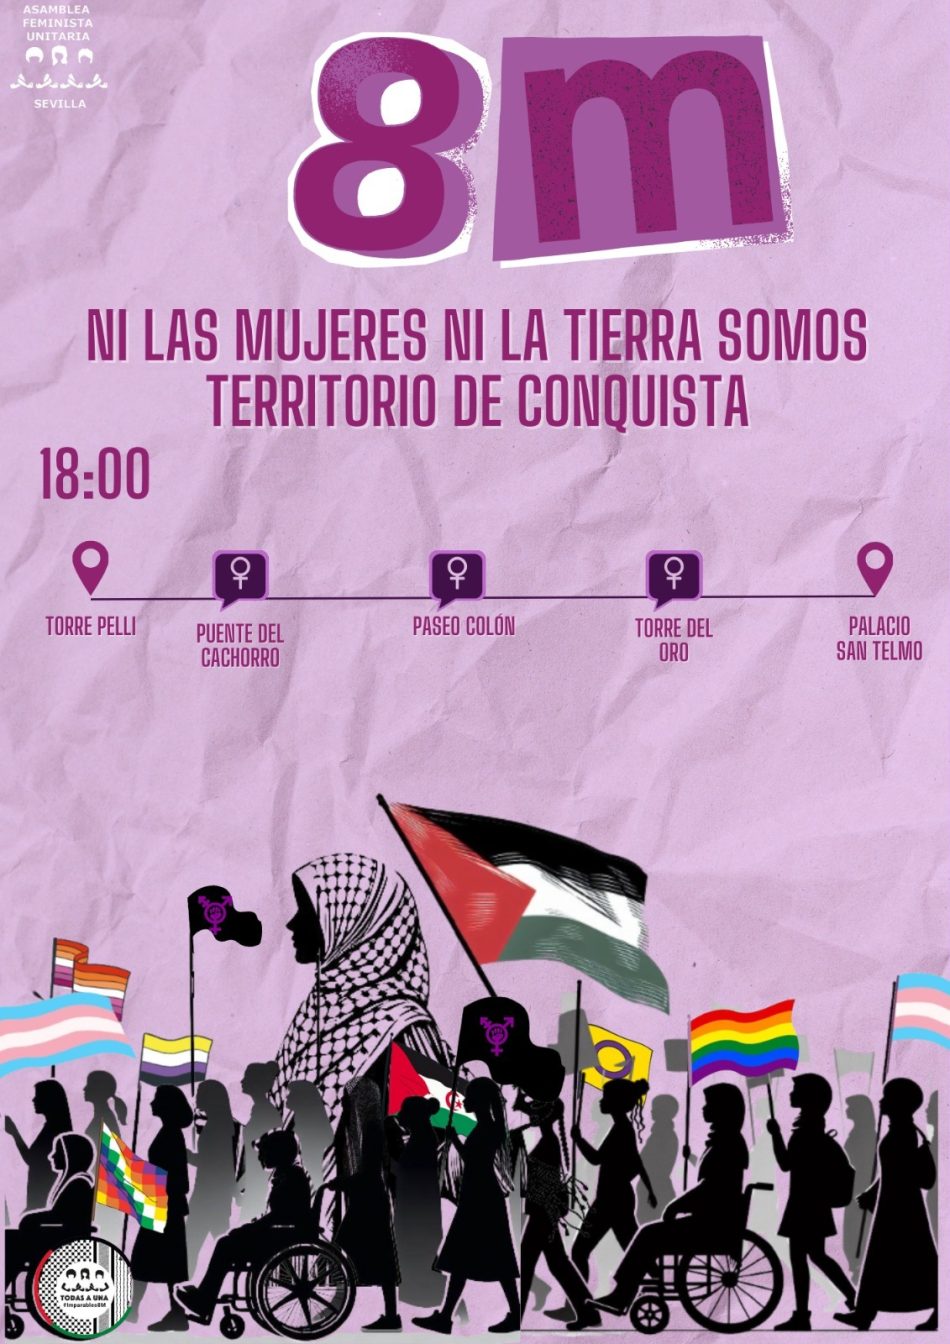 Asamblea Feminista Unitaria de Sevilla (AFUS) reclama para el 8M el fin de la ocupación y las violencias machistas